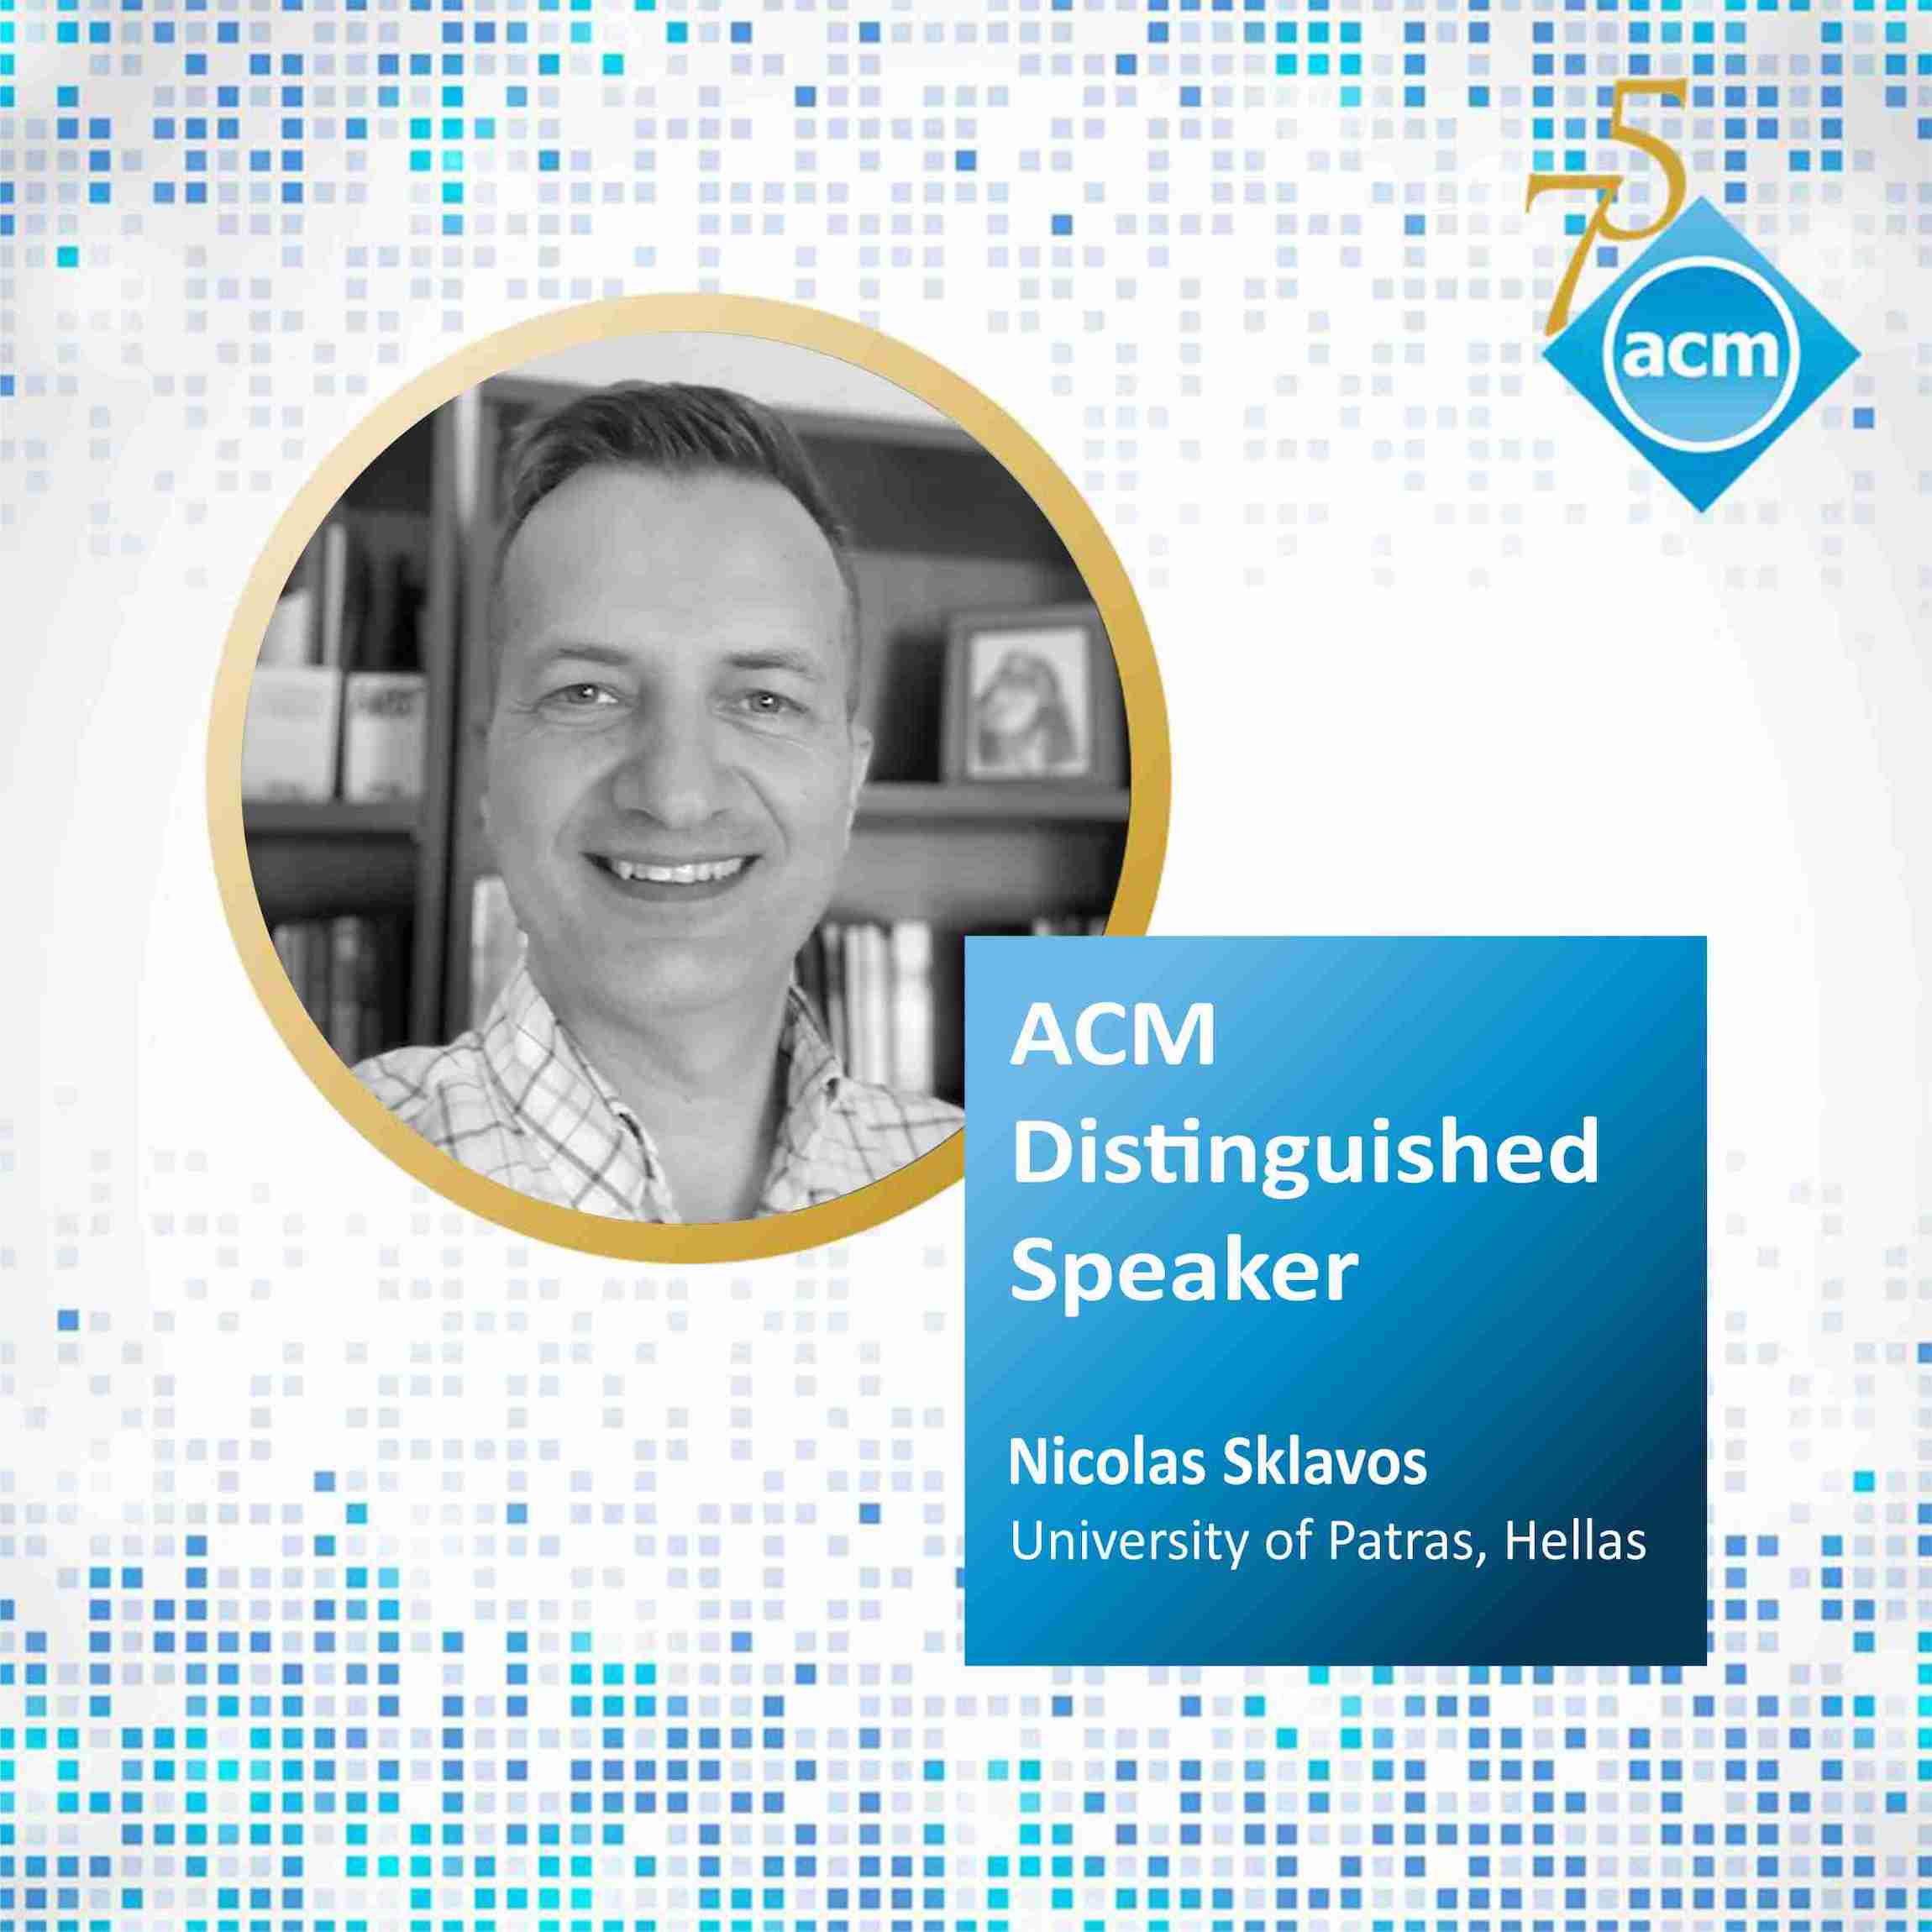 Nicolas Sklavos, is a new ACM Distinguished Speaker